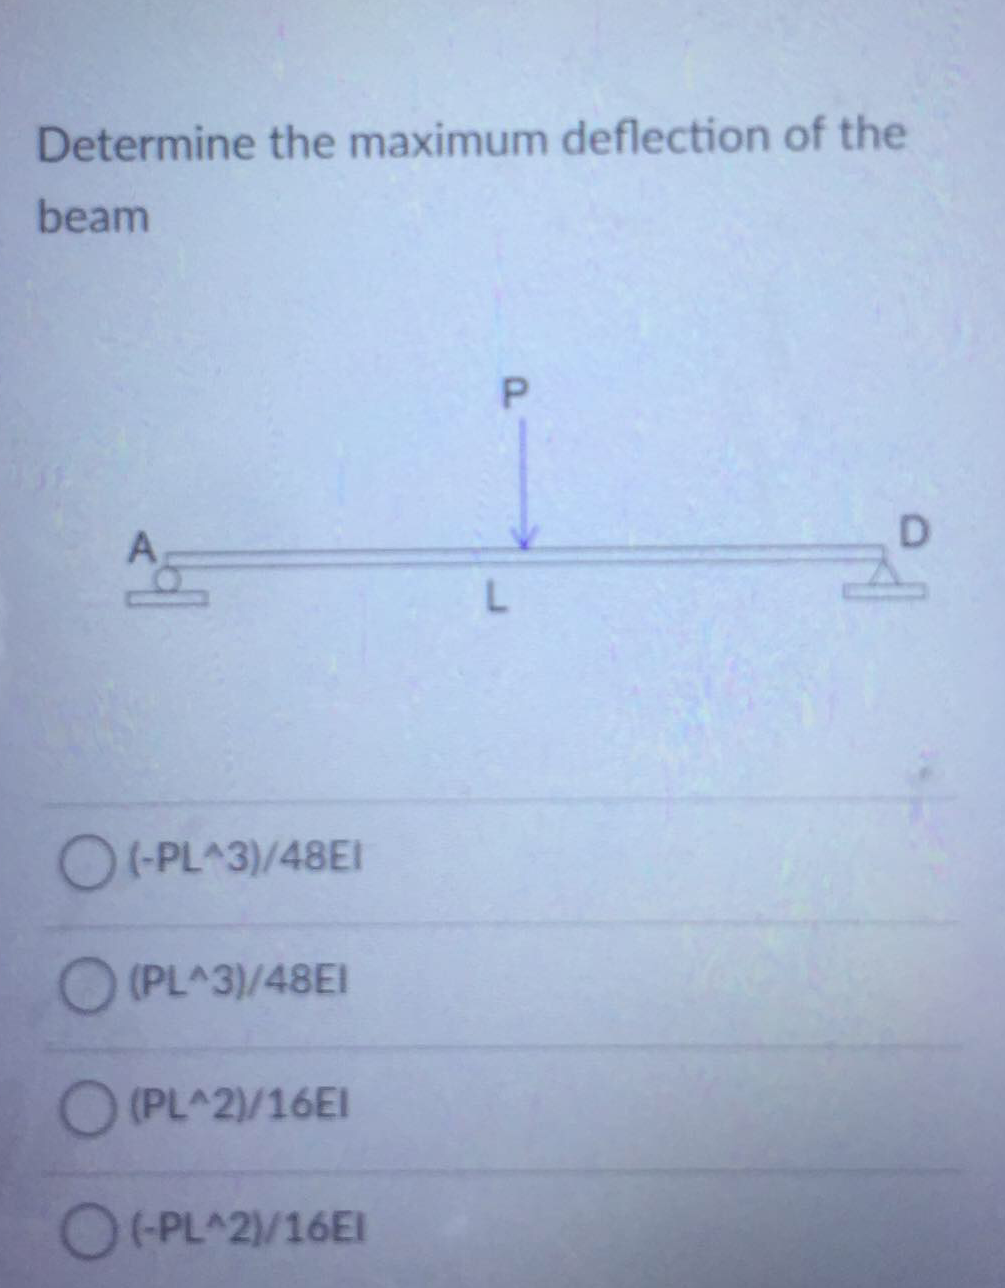 Determine the maximum deflection of the
beam
D.
O(PL^3)/48EI
(PL^3)/48EI
O (PL^2)/16EI
O+PL^2/16EI
P.
